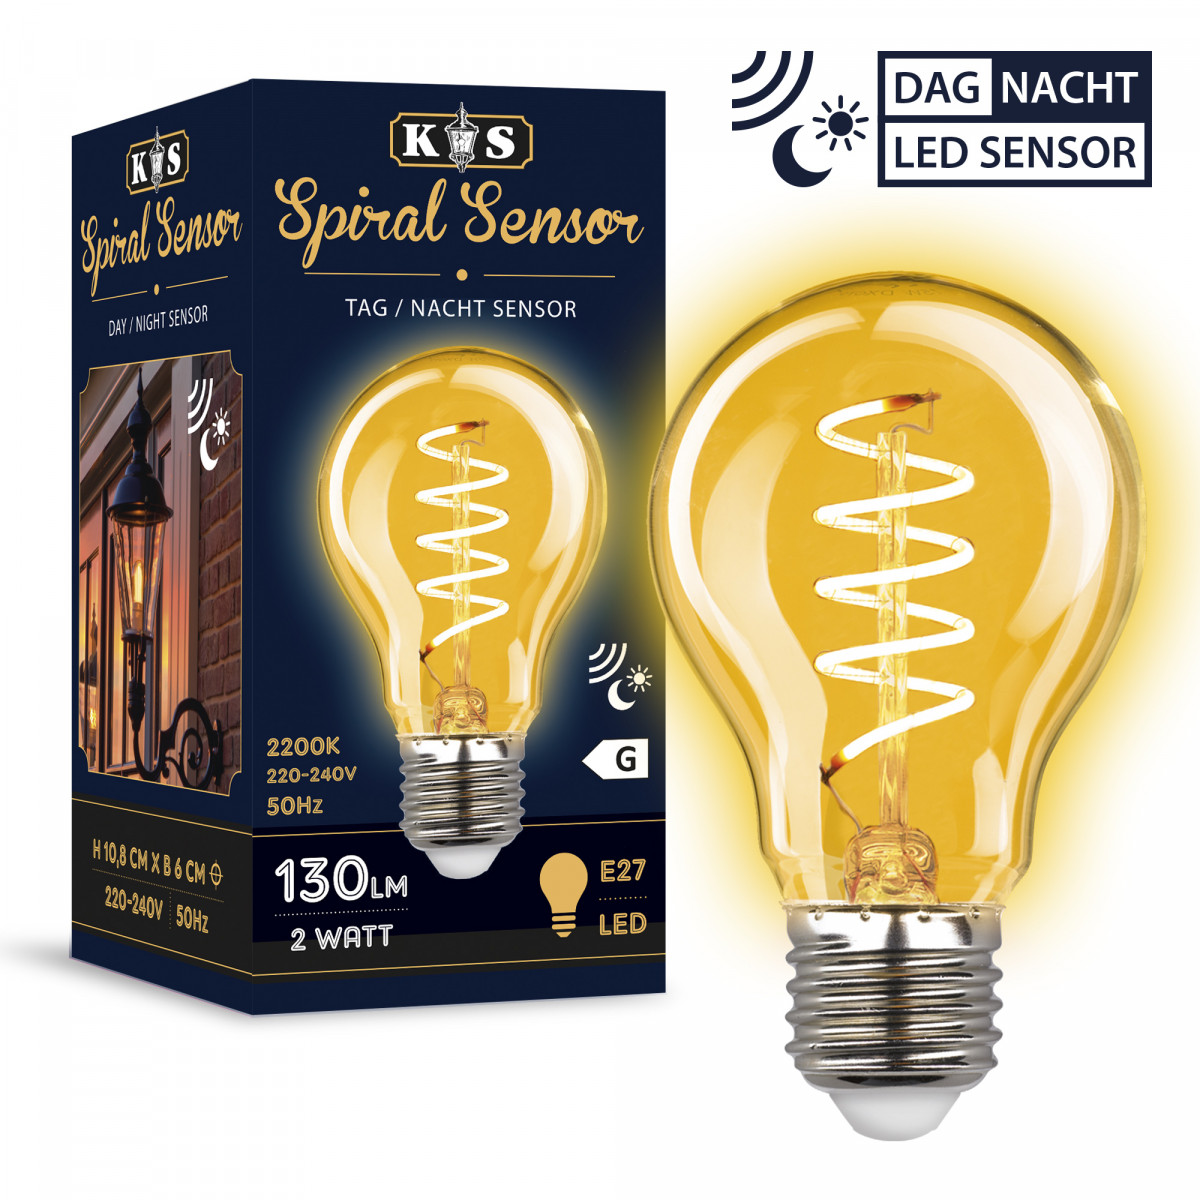 LED-Lichtquelle inkl. Tag/Nacht-Sensor (5897 LED) - KS Illumination - Lose Sensoren und Bewegungsmelder